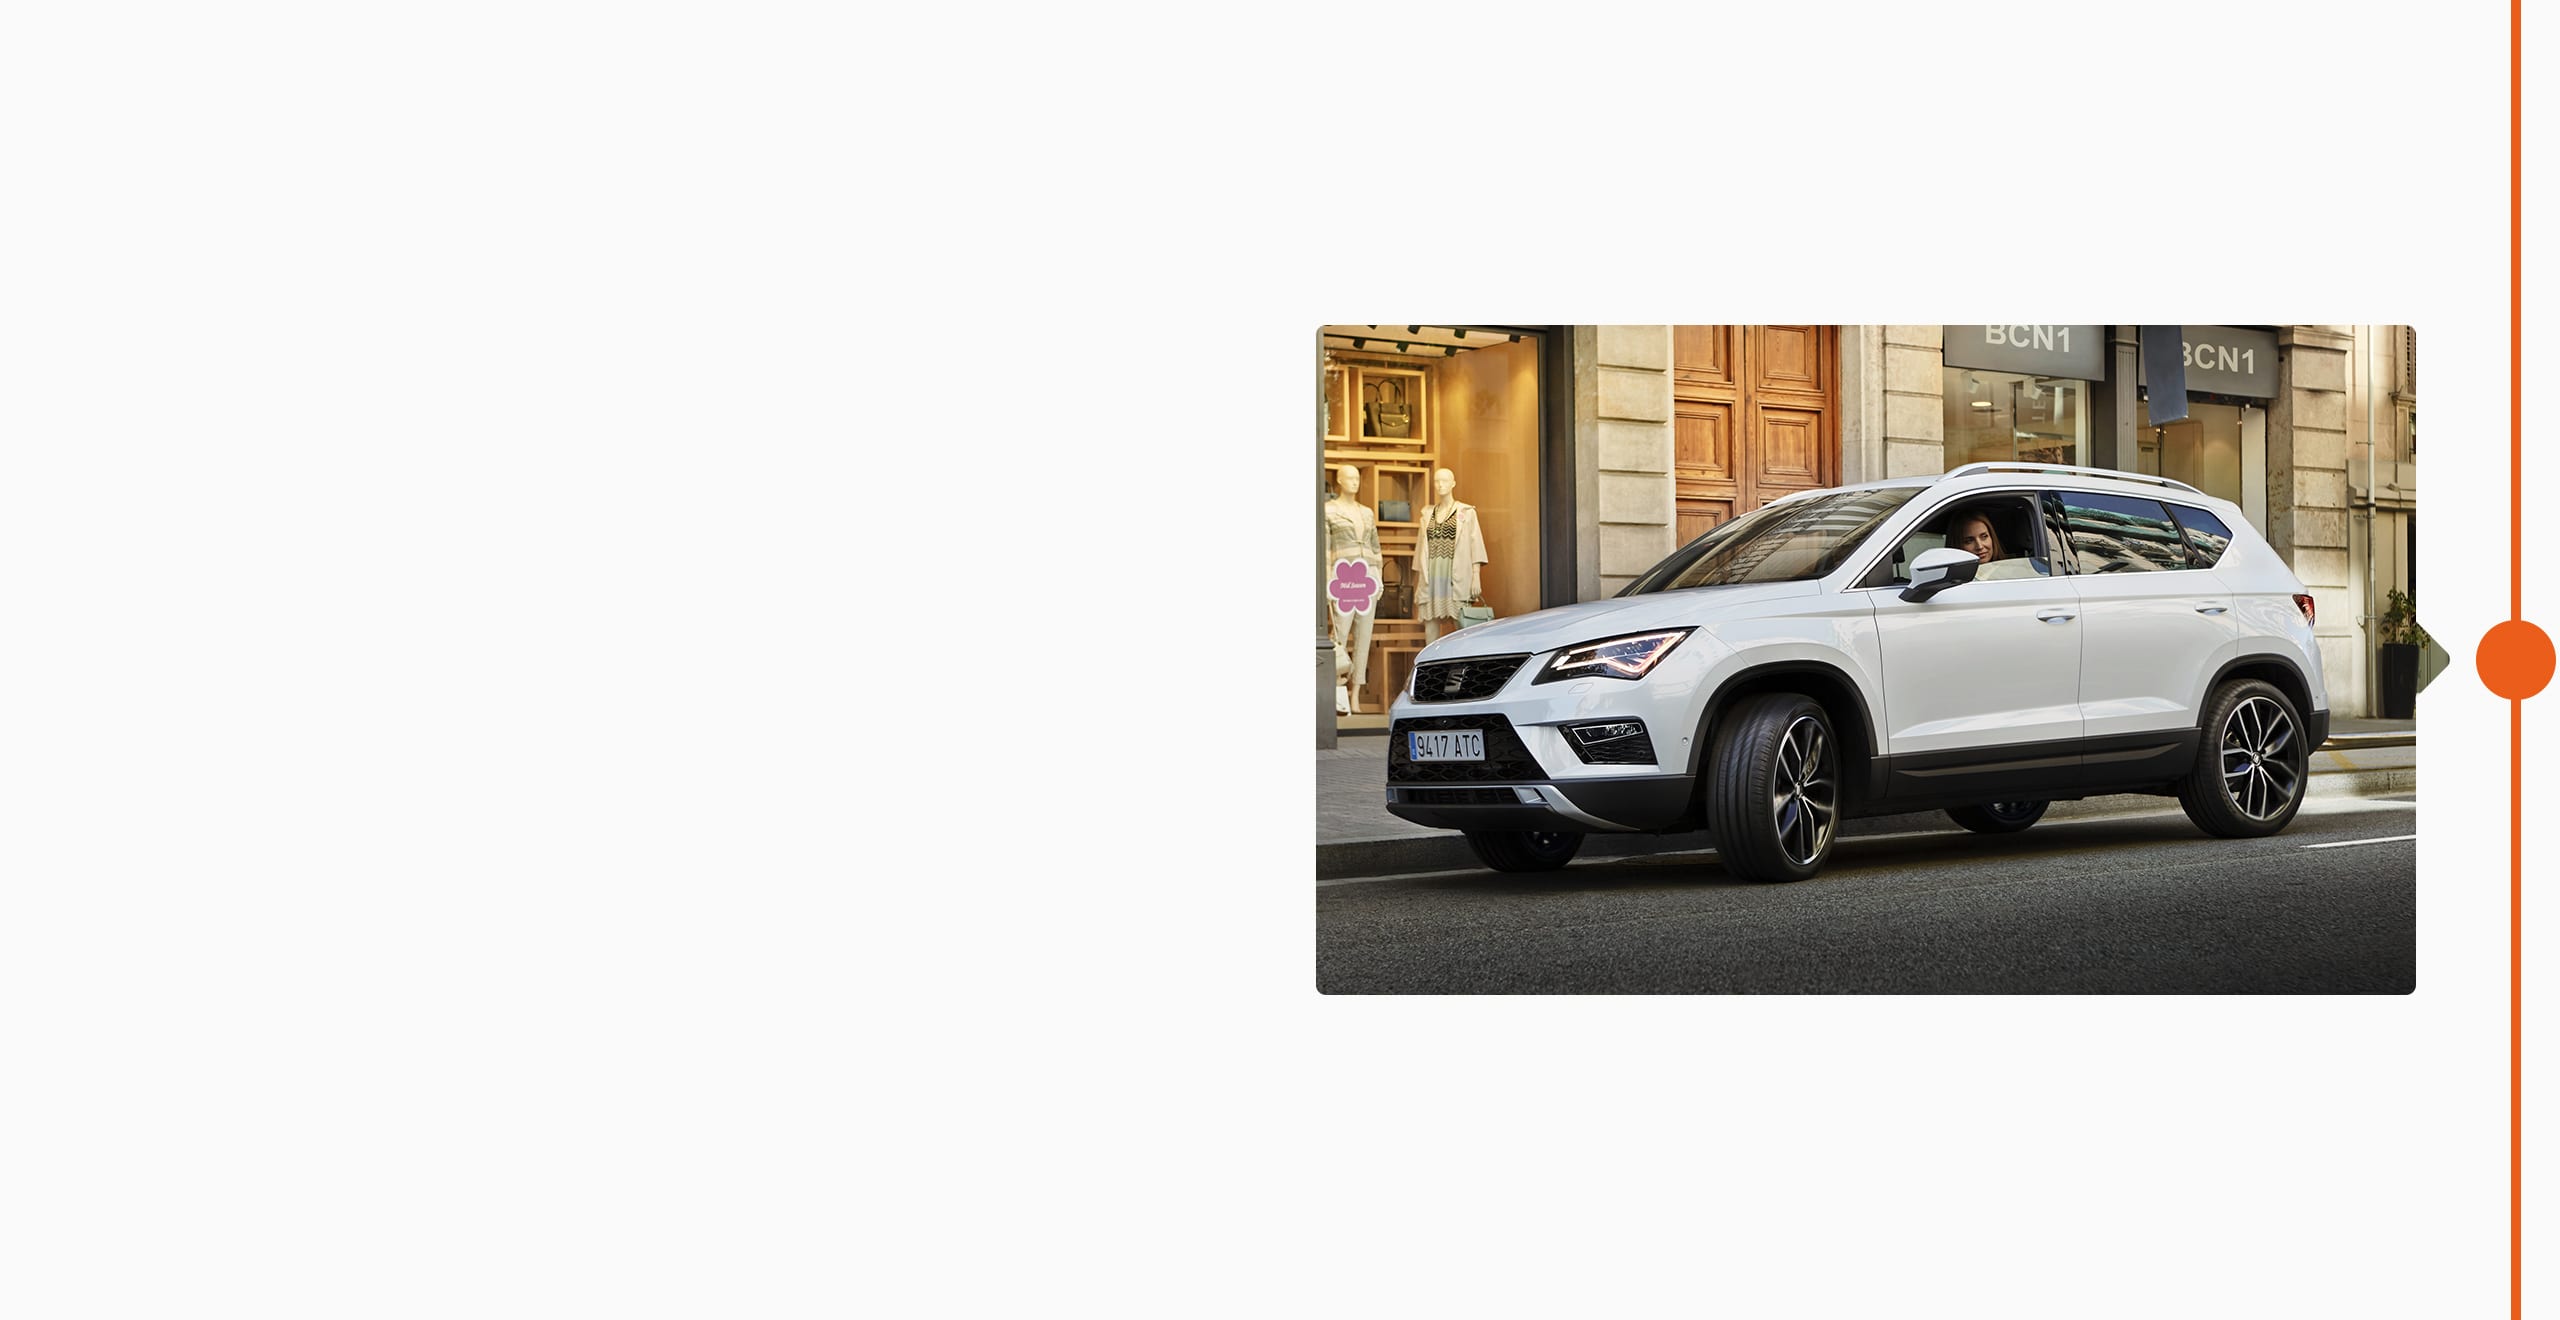 Histoire de la marque SEAT 2016 - SEAT Ateca SUV premier SUV utilitaire sport